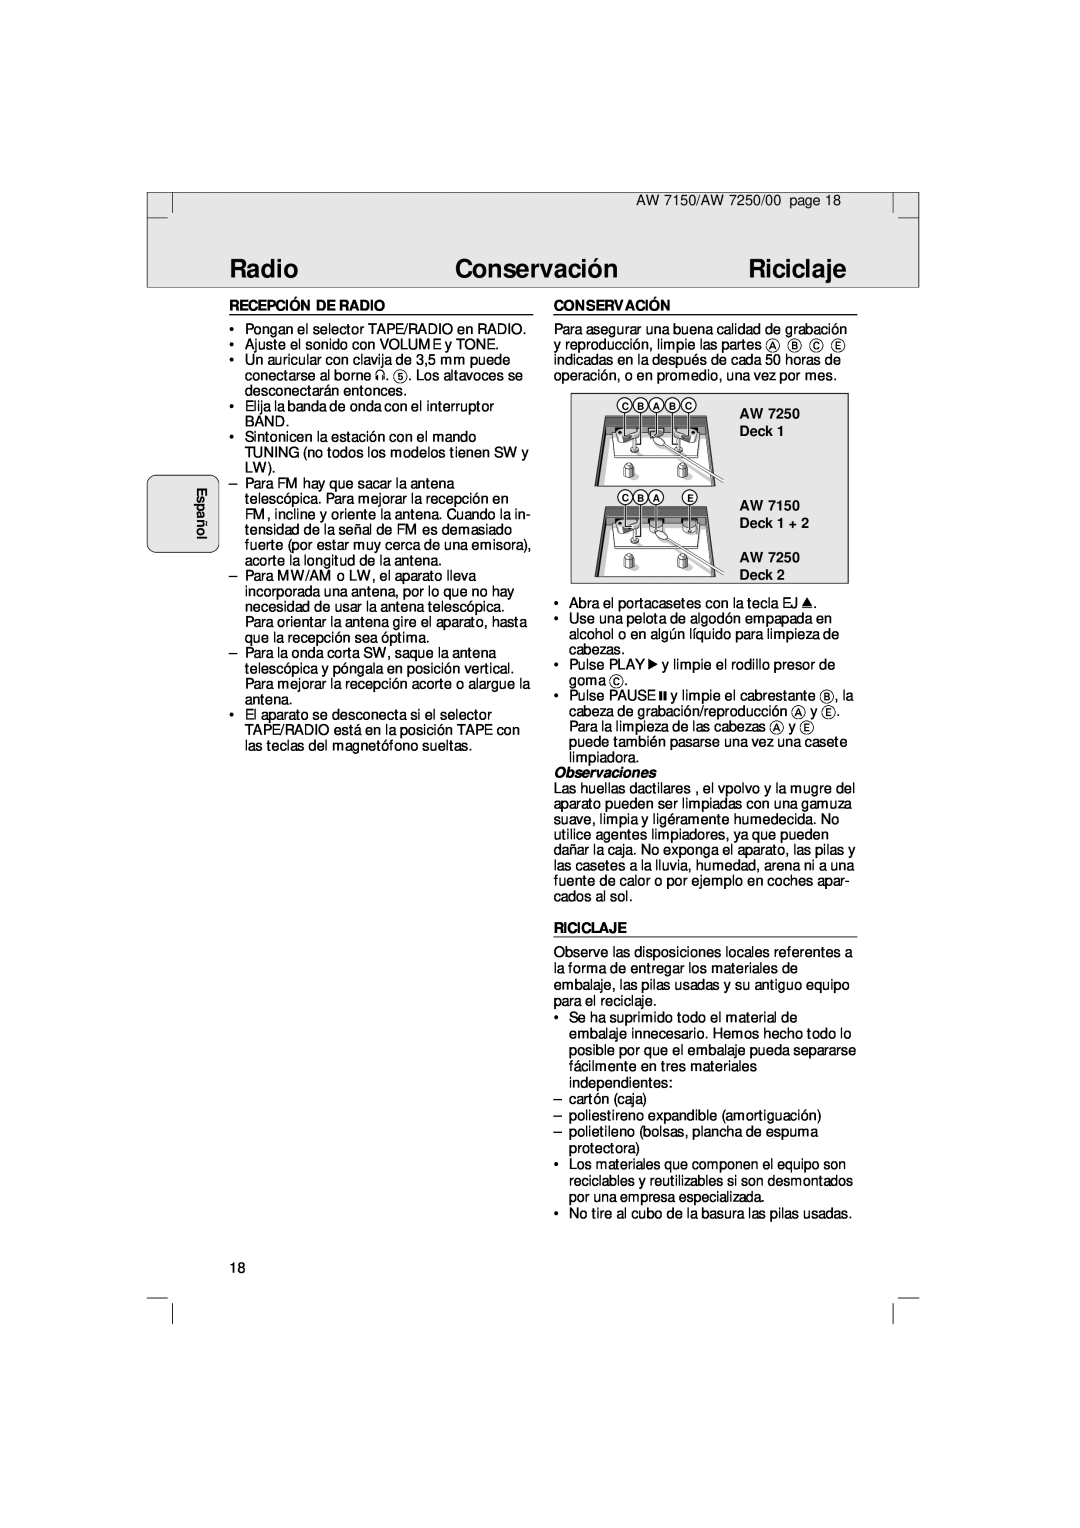 Philips AW 7150/04S manual Conservación, Riciclaje, Español, Recepción De Radio, Deck 1 + AW Deck, Observaciones 